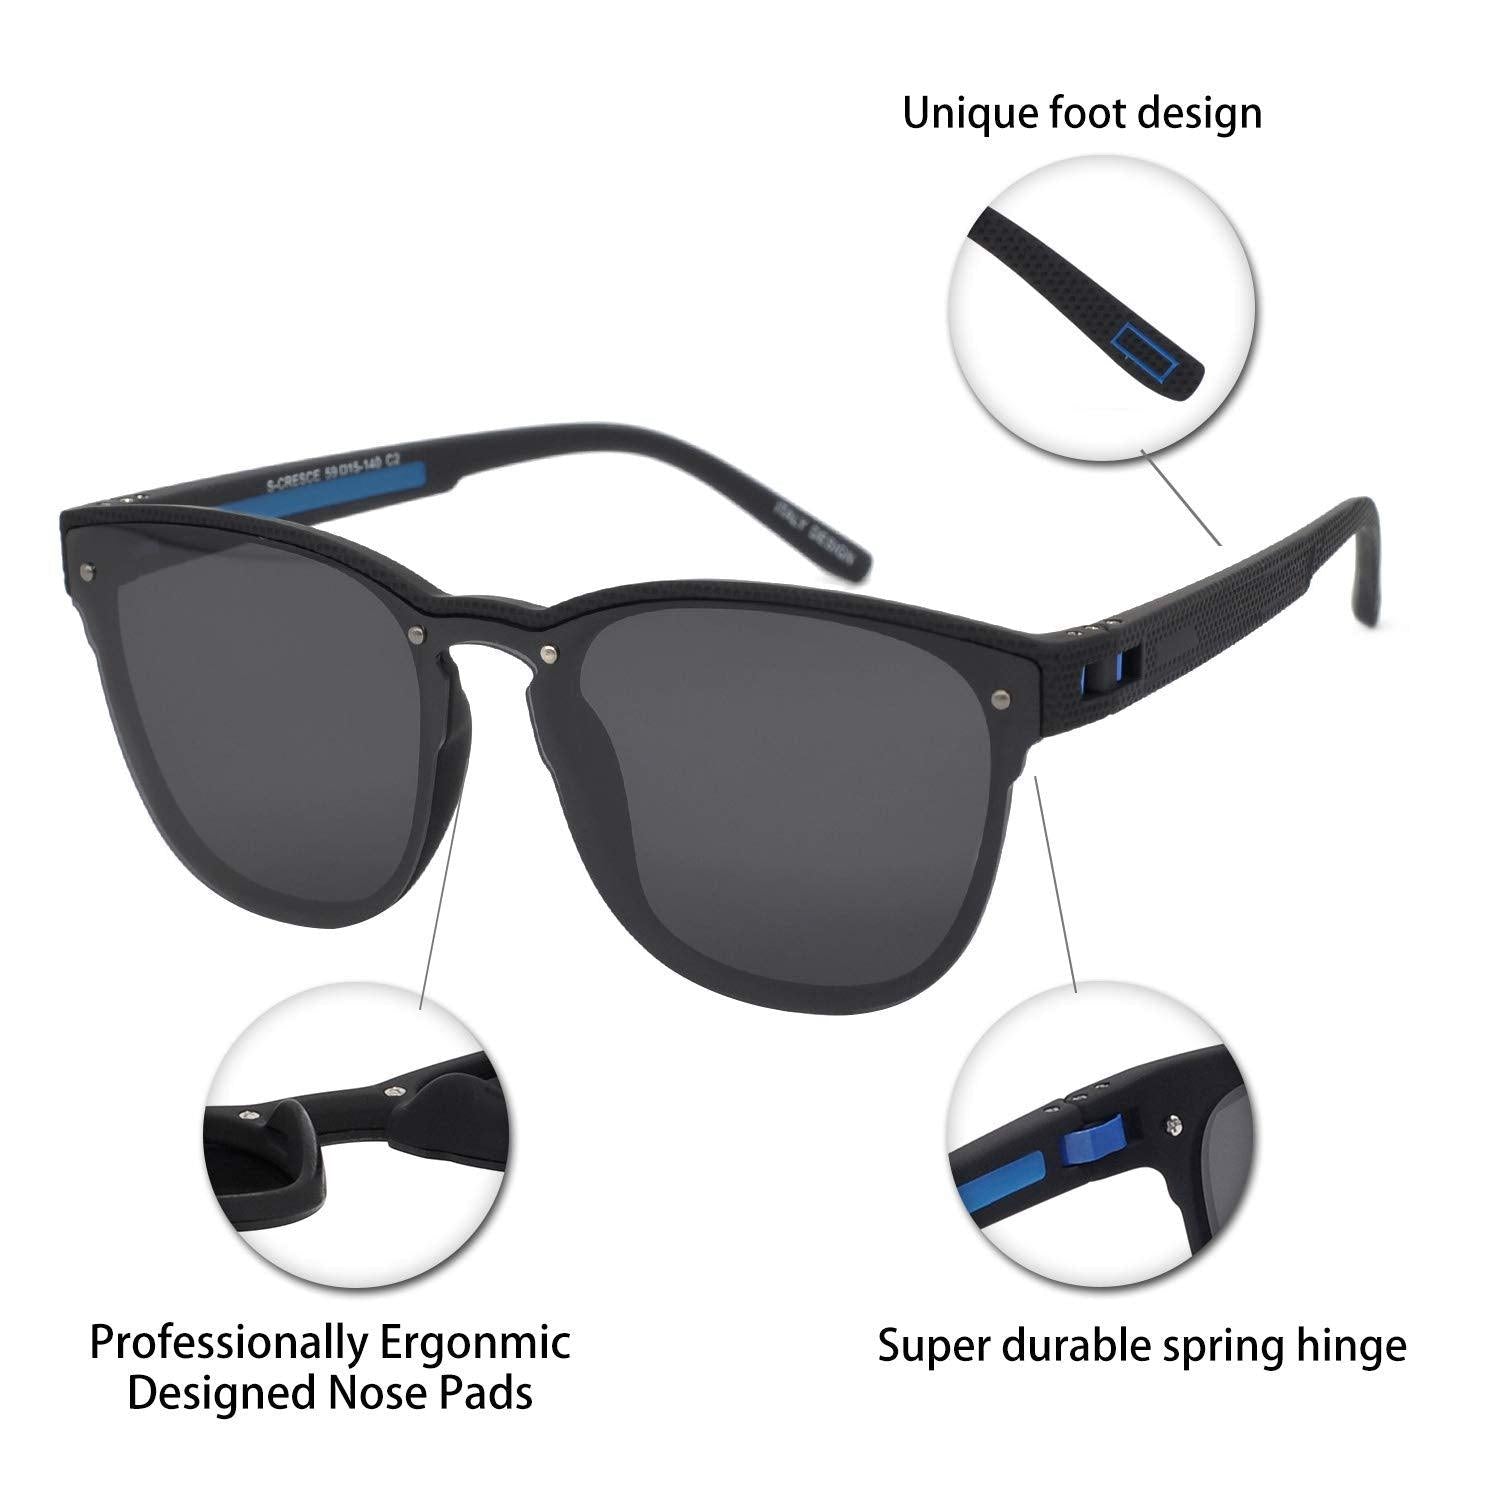 Mens Polarized UV 400 Protection Sport Square Sunglasses for Men Fishing Driving OCCI CHIARI - Occichiari 